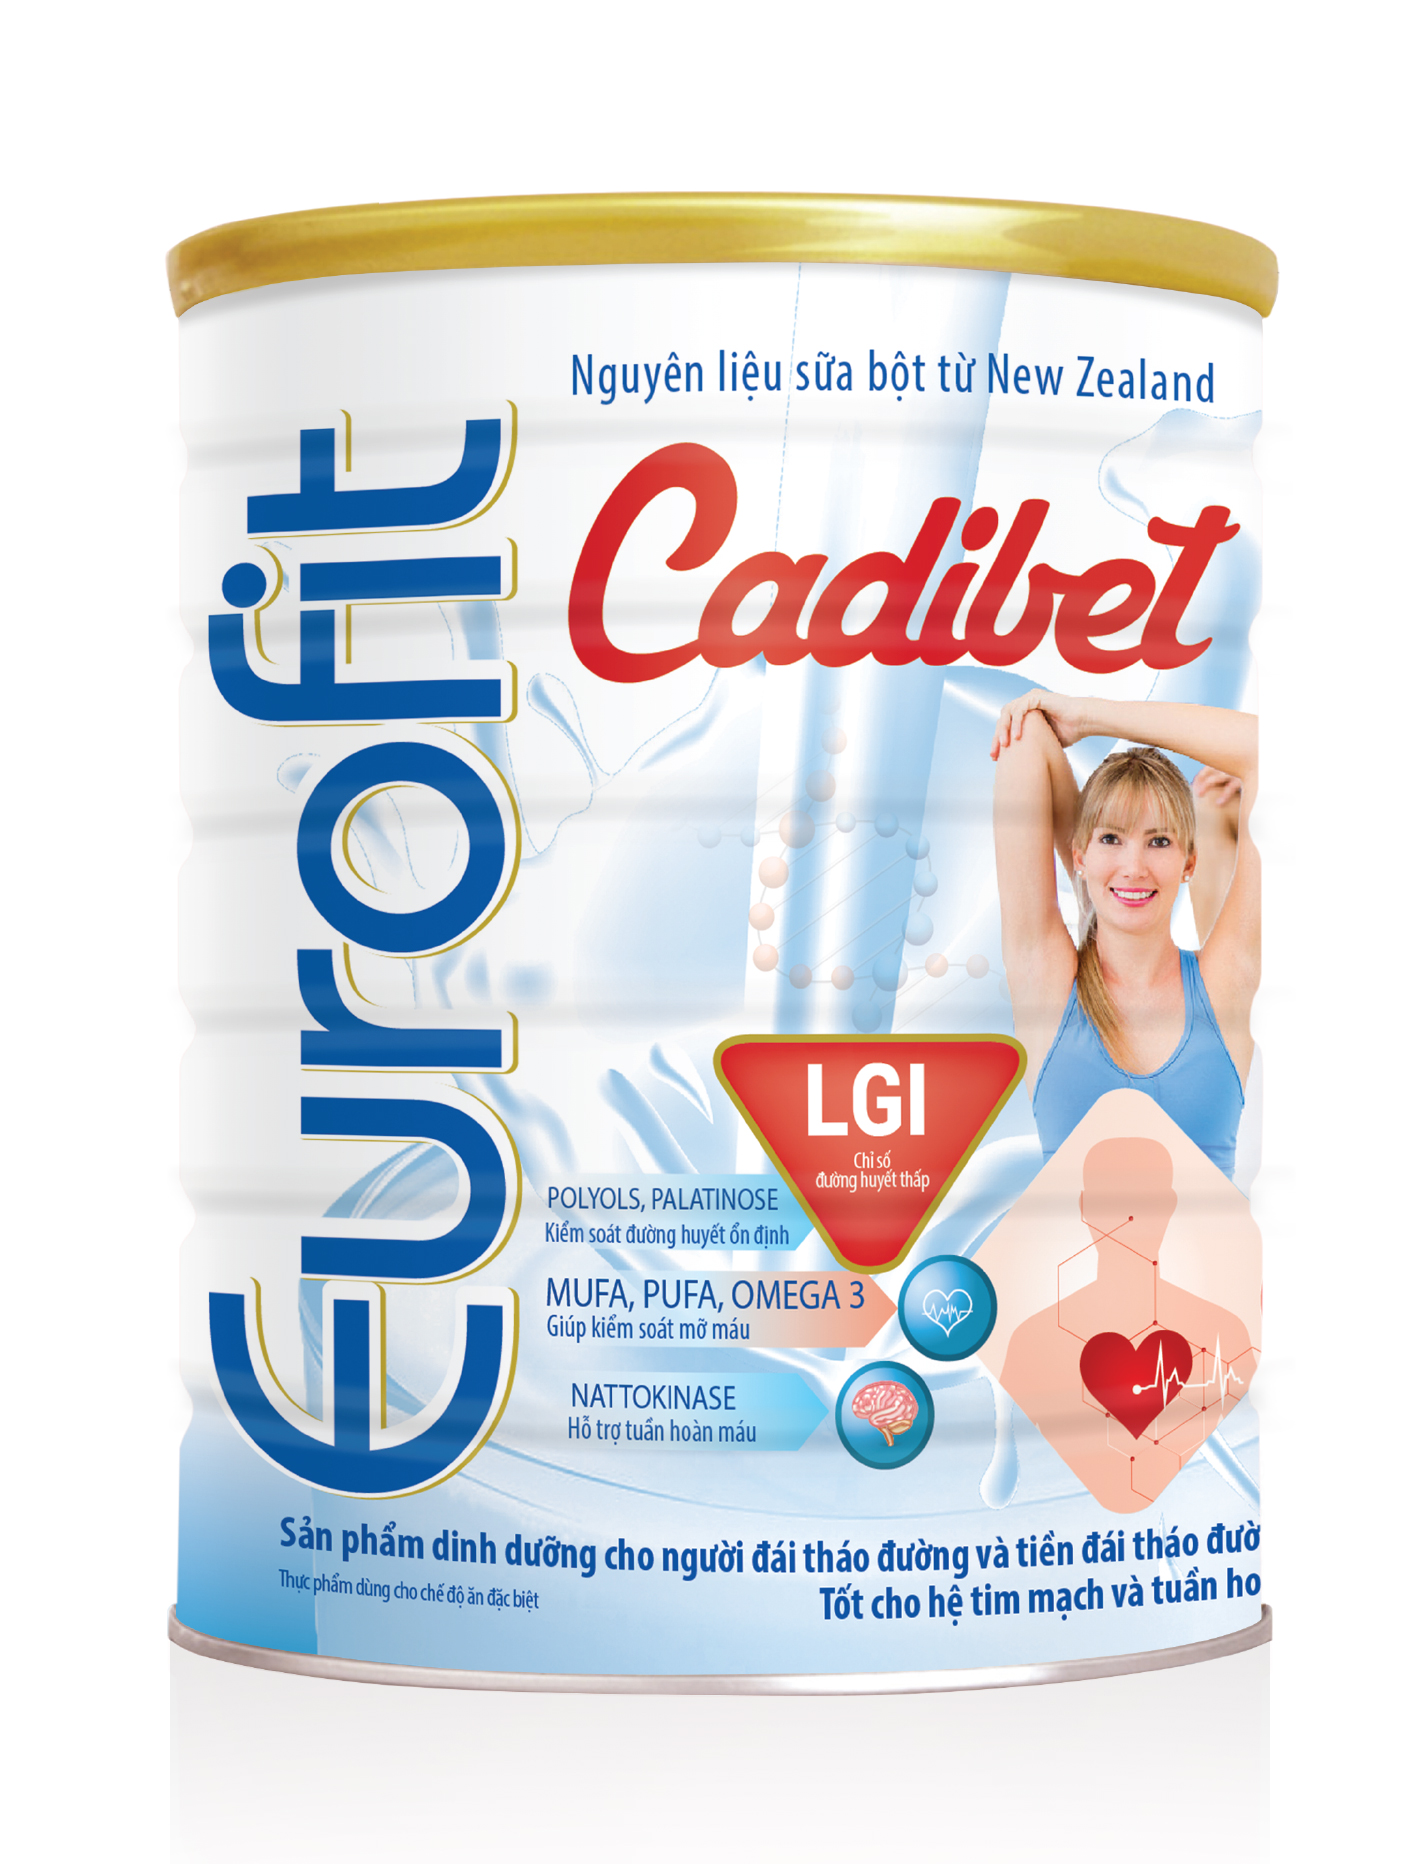 Eurofit Cadibet - sữa cho người tiểu đường và mỡ máu